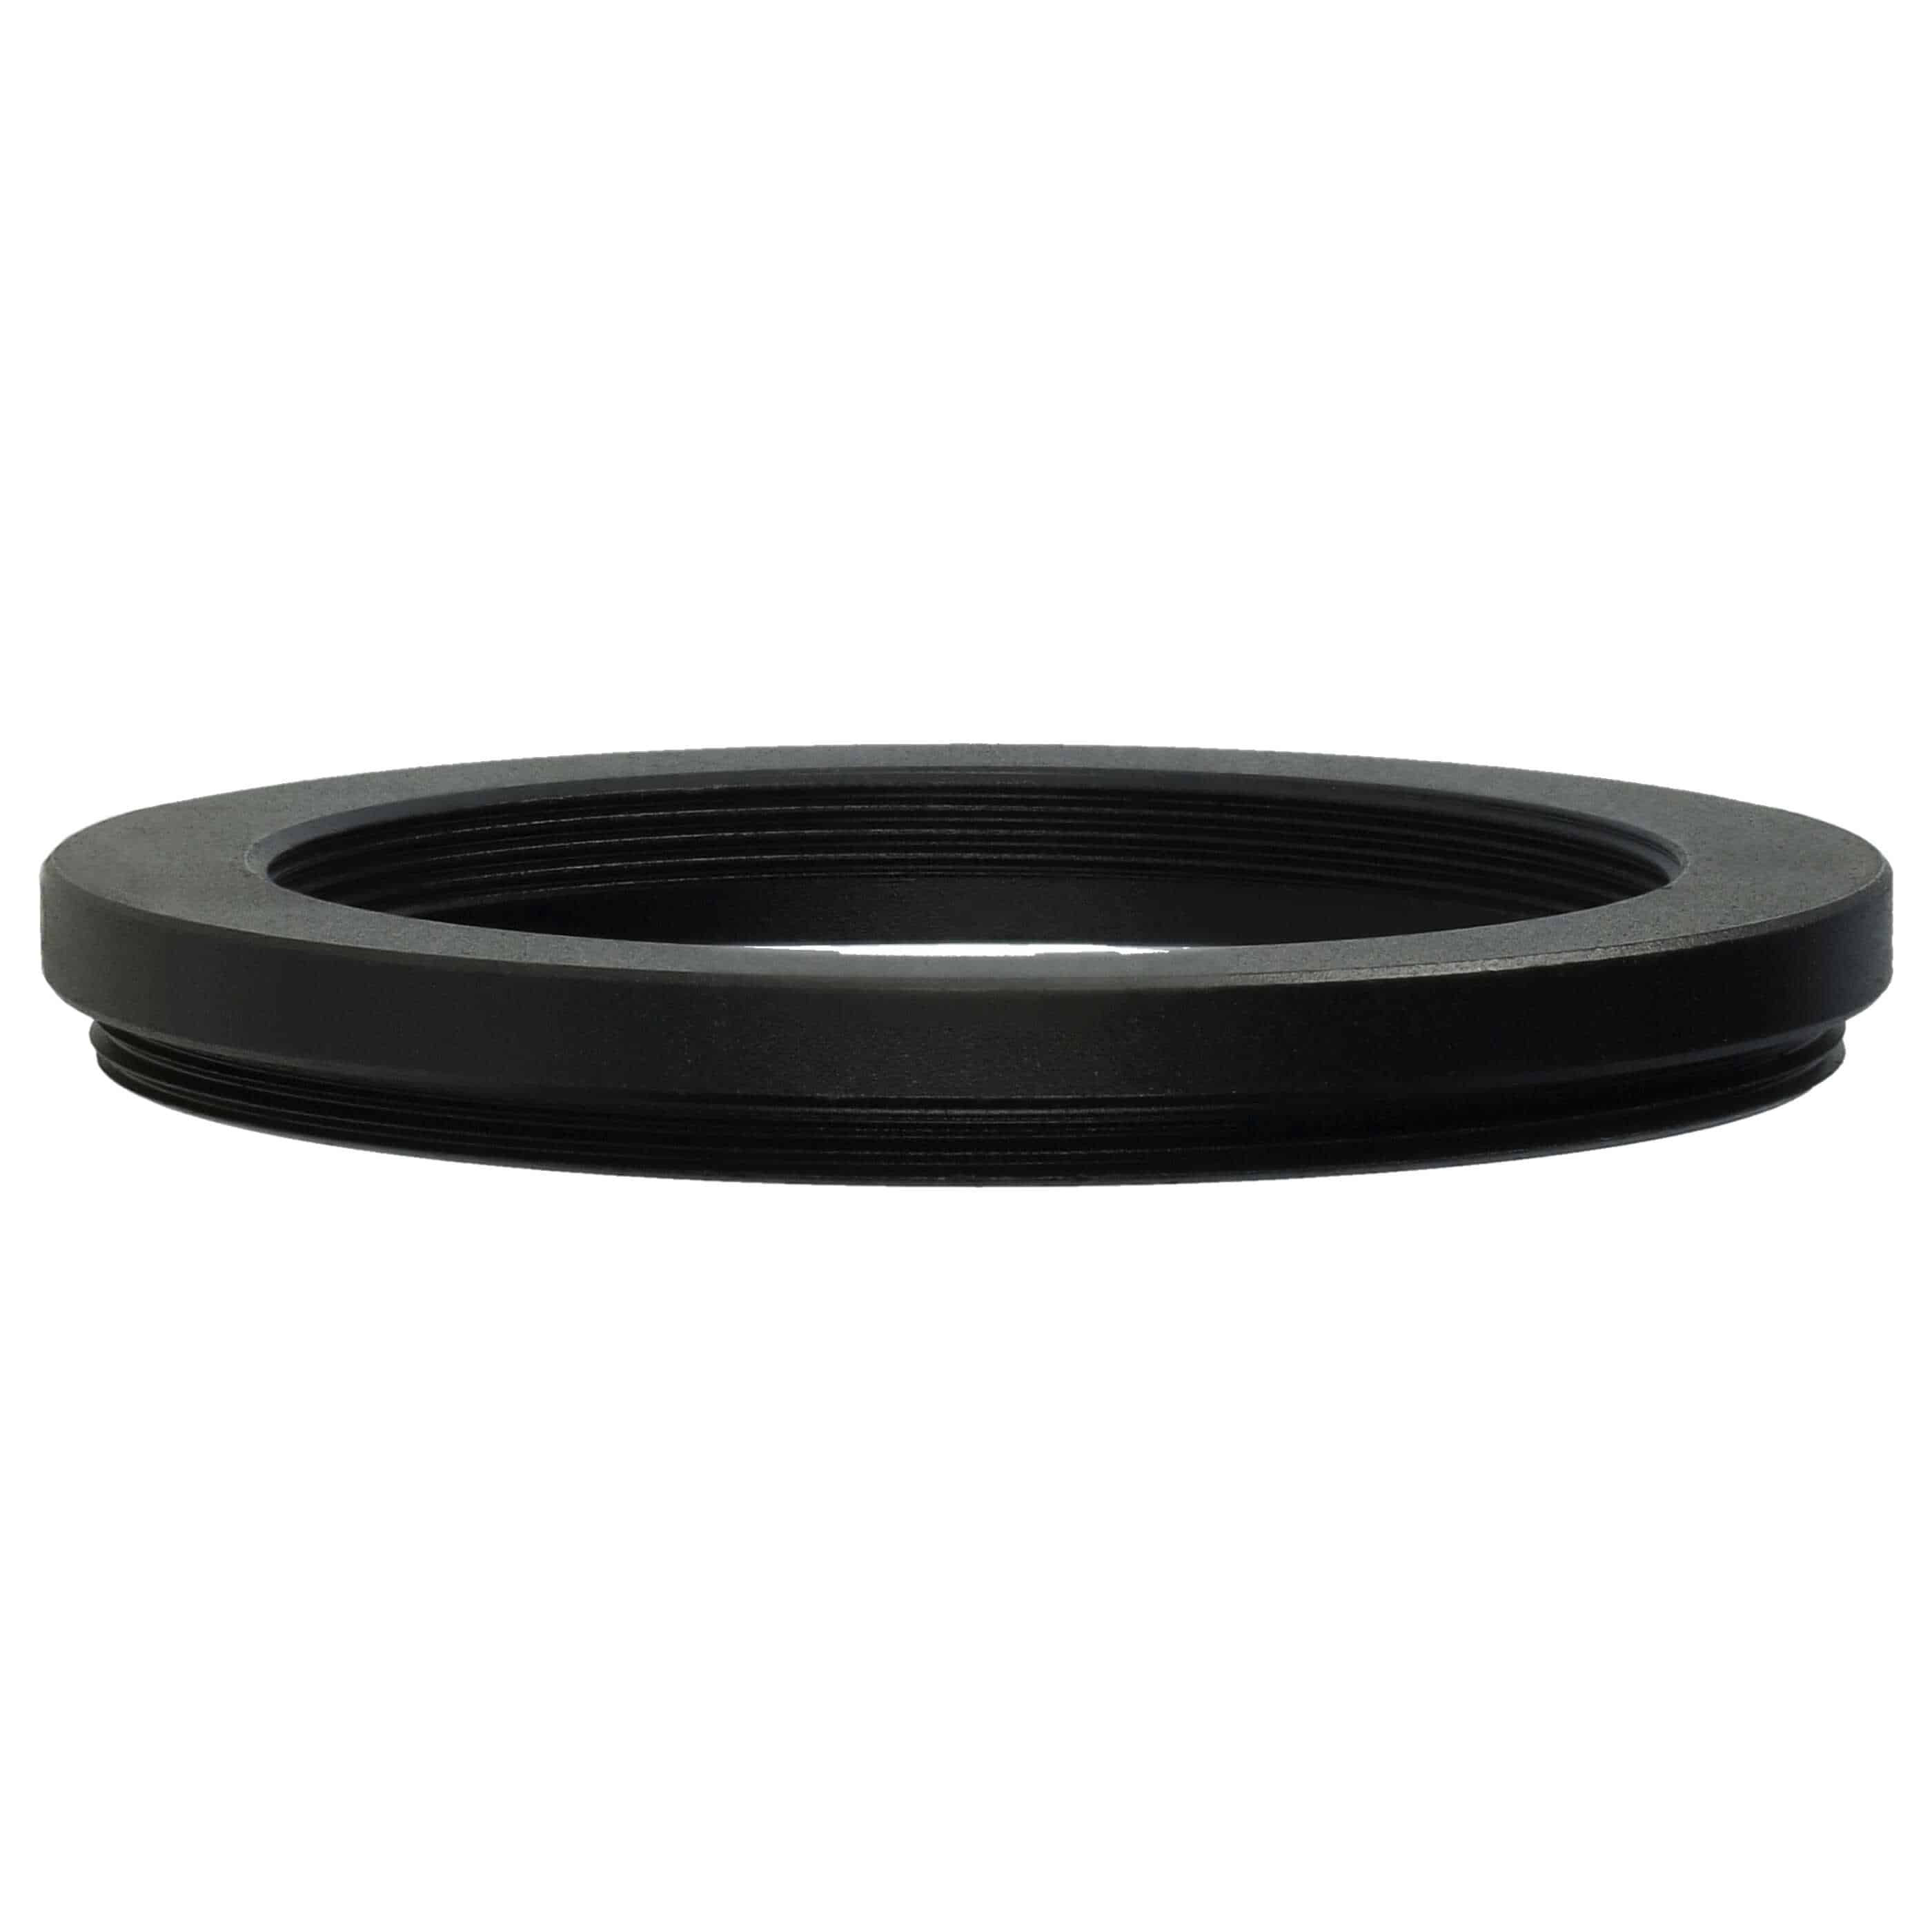 Anello adattatore step-down da 52 mm a 42 mm per obiettivo fotocamera - Adattatore filtro, metallo, nero